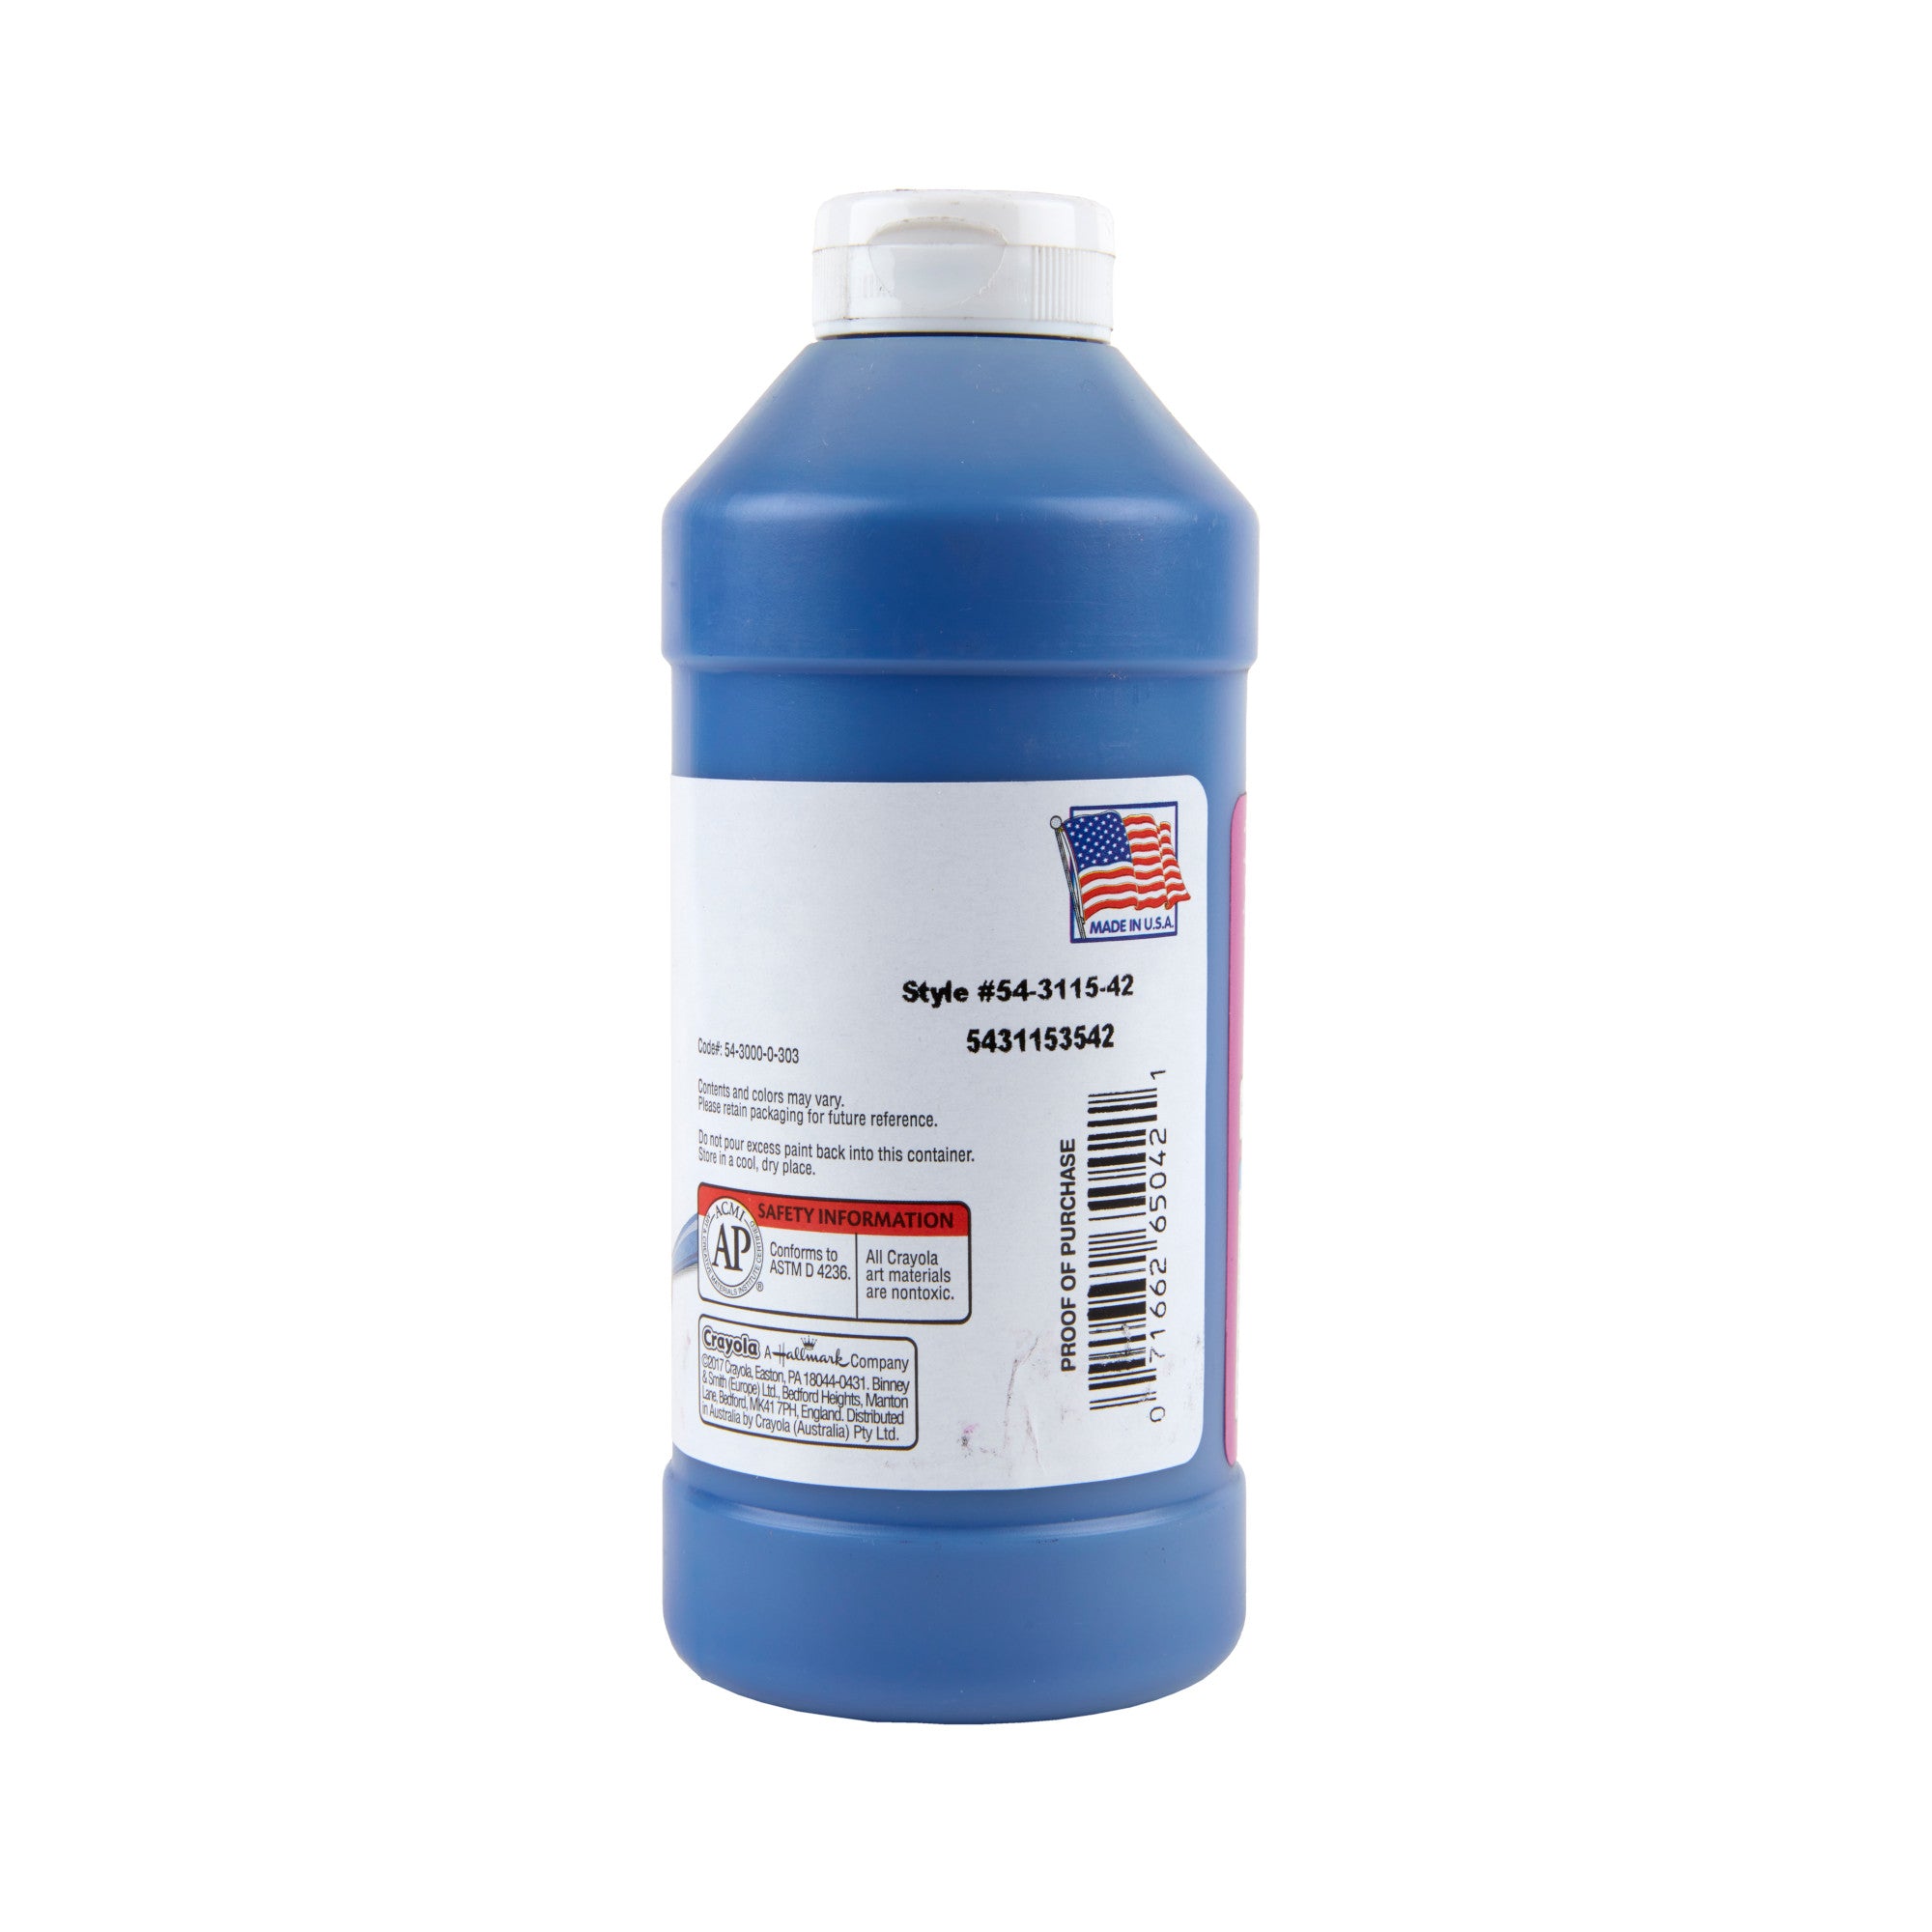 Crayola Washable Tempera Paint 946 ml, Blue